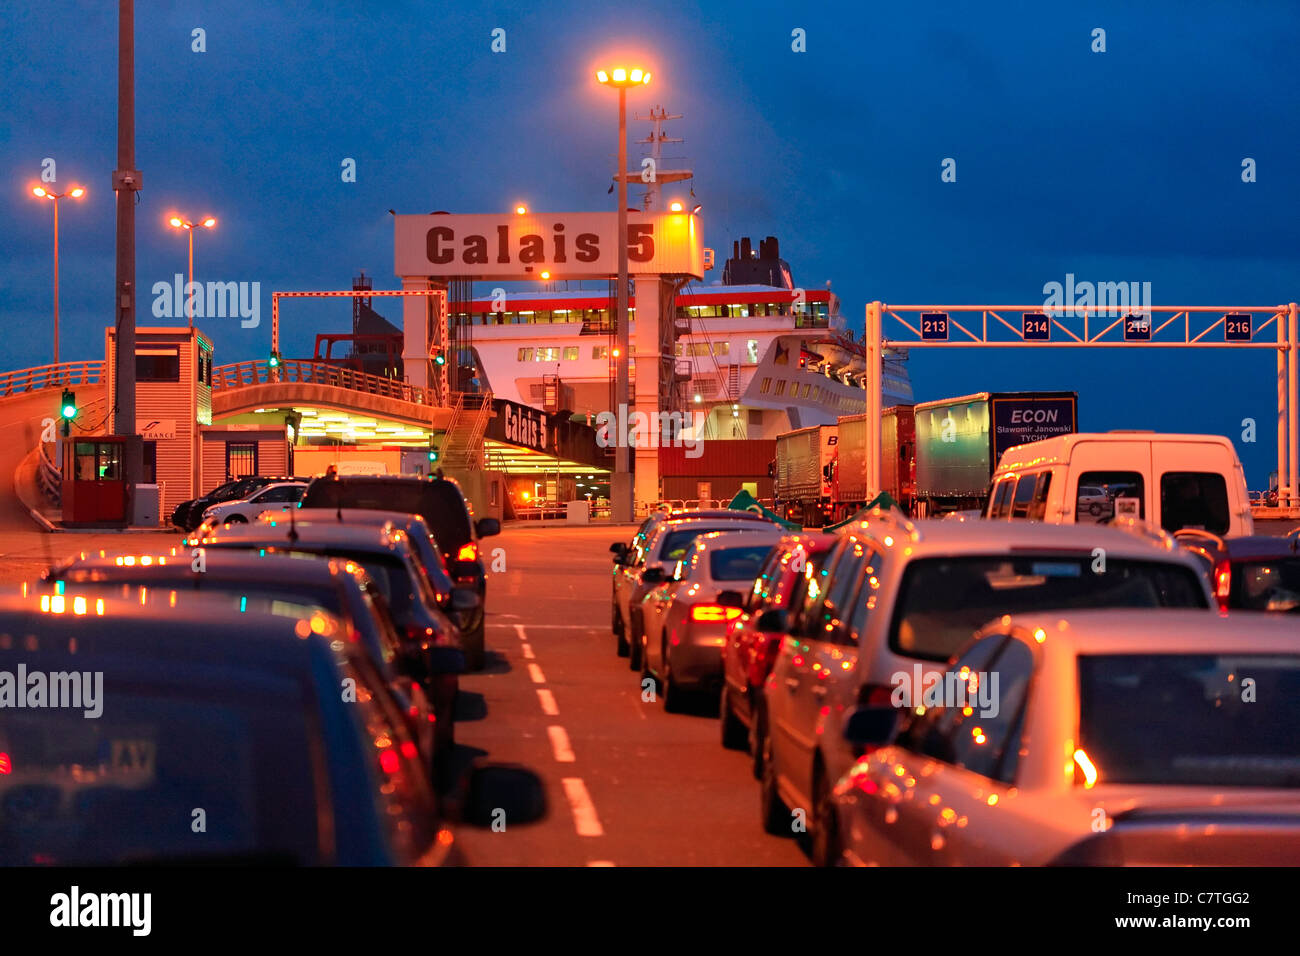 Calais Hafen bei Nacht - Autos warten auf Board-Fähre nach Dover. Stockfoto